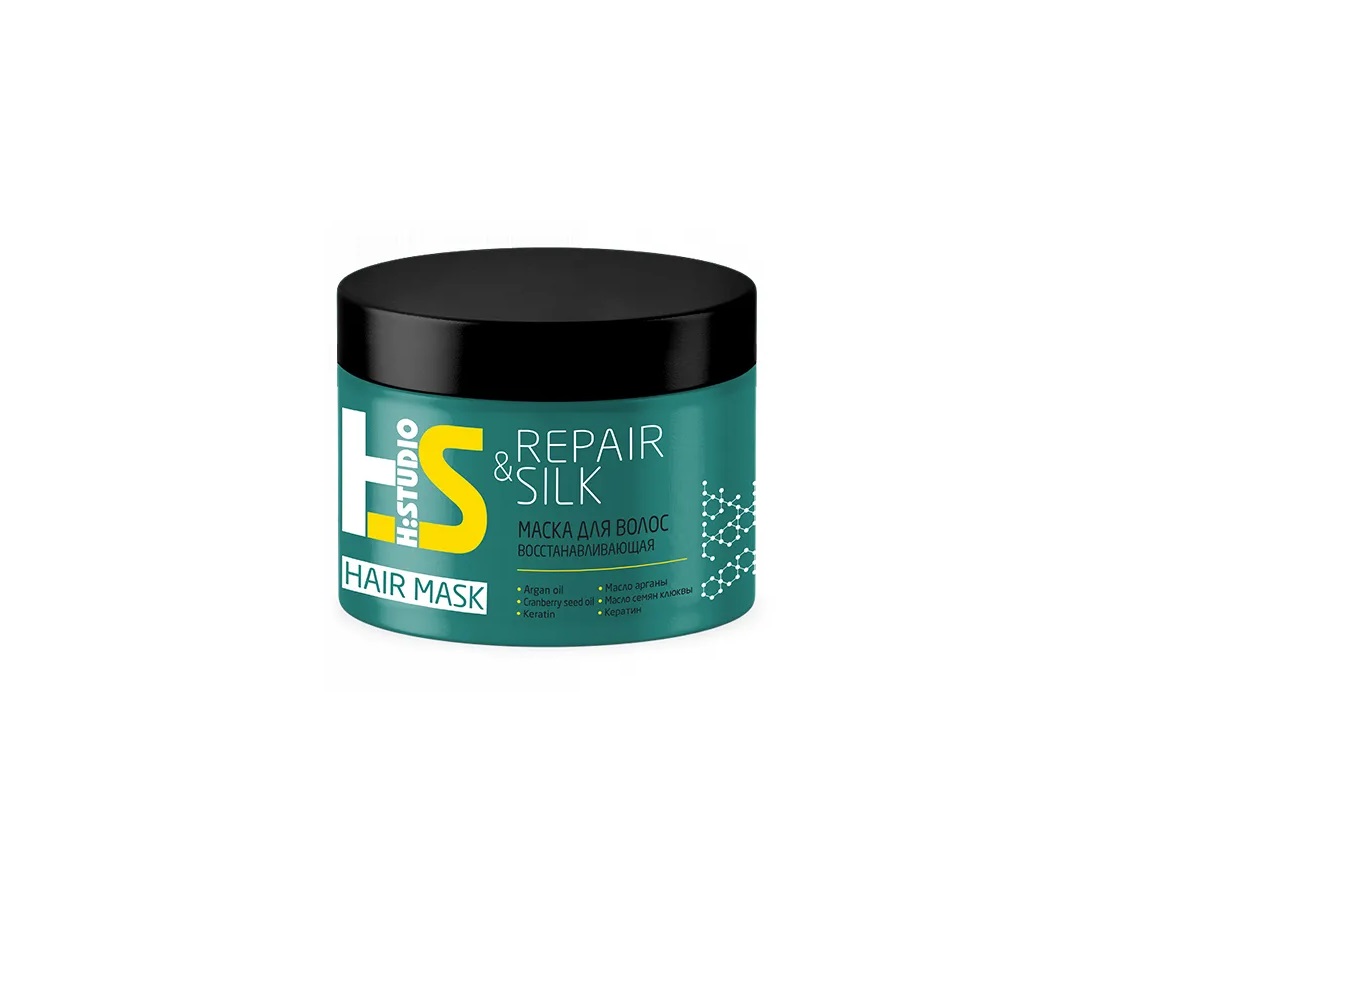 Маска для волос repair отзывы. ROMAX H:Studio маска для восстановления волос Repair&Silk 300г. ROMAX H:Studio маска для.